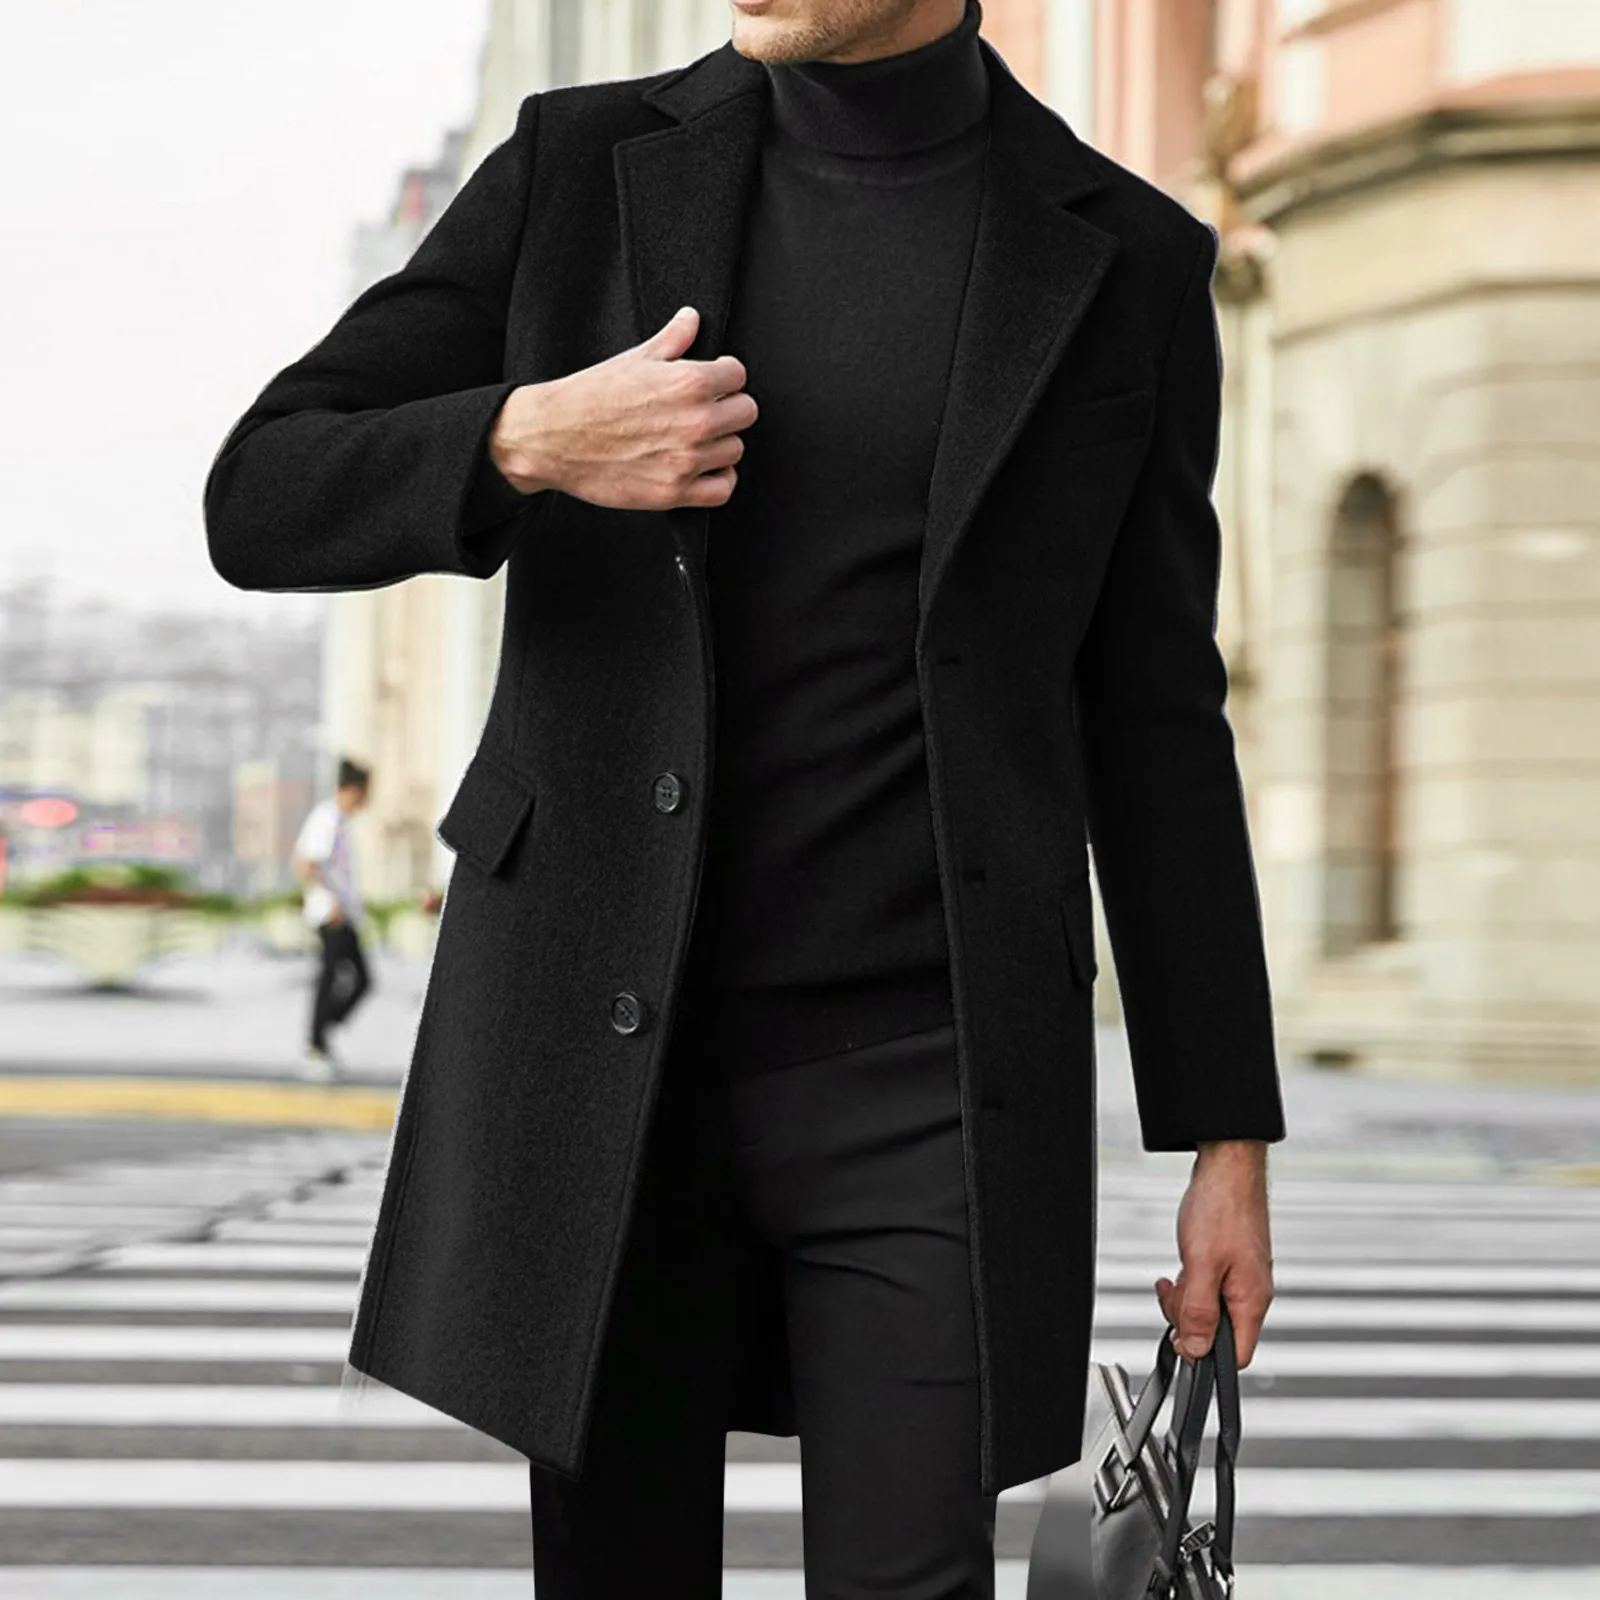 Мужские пальто купить в Москве, цена в интернет-магазине Легионер